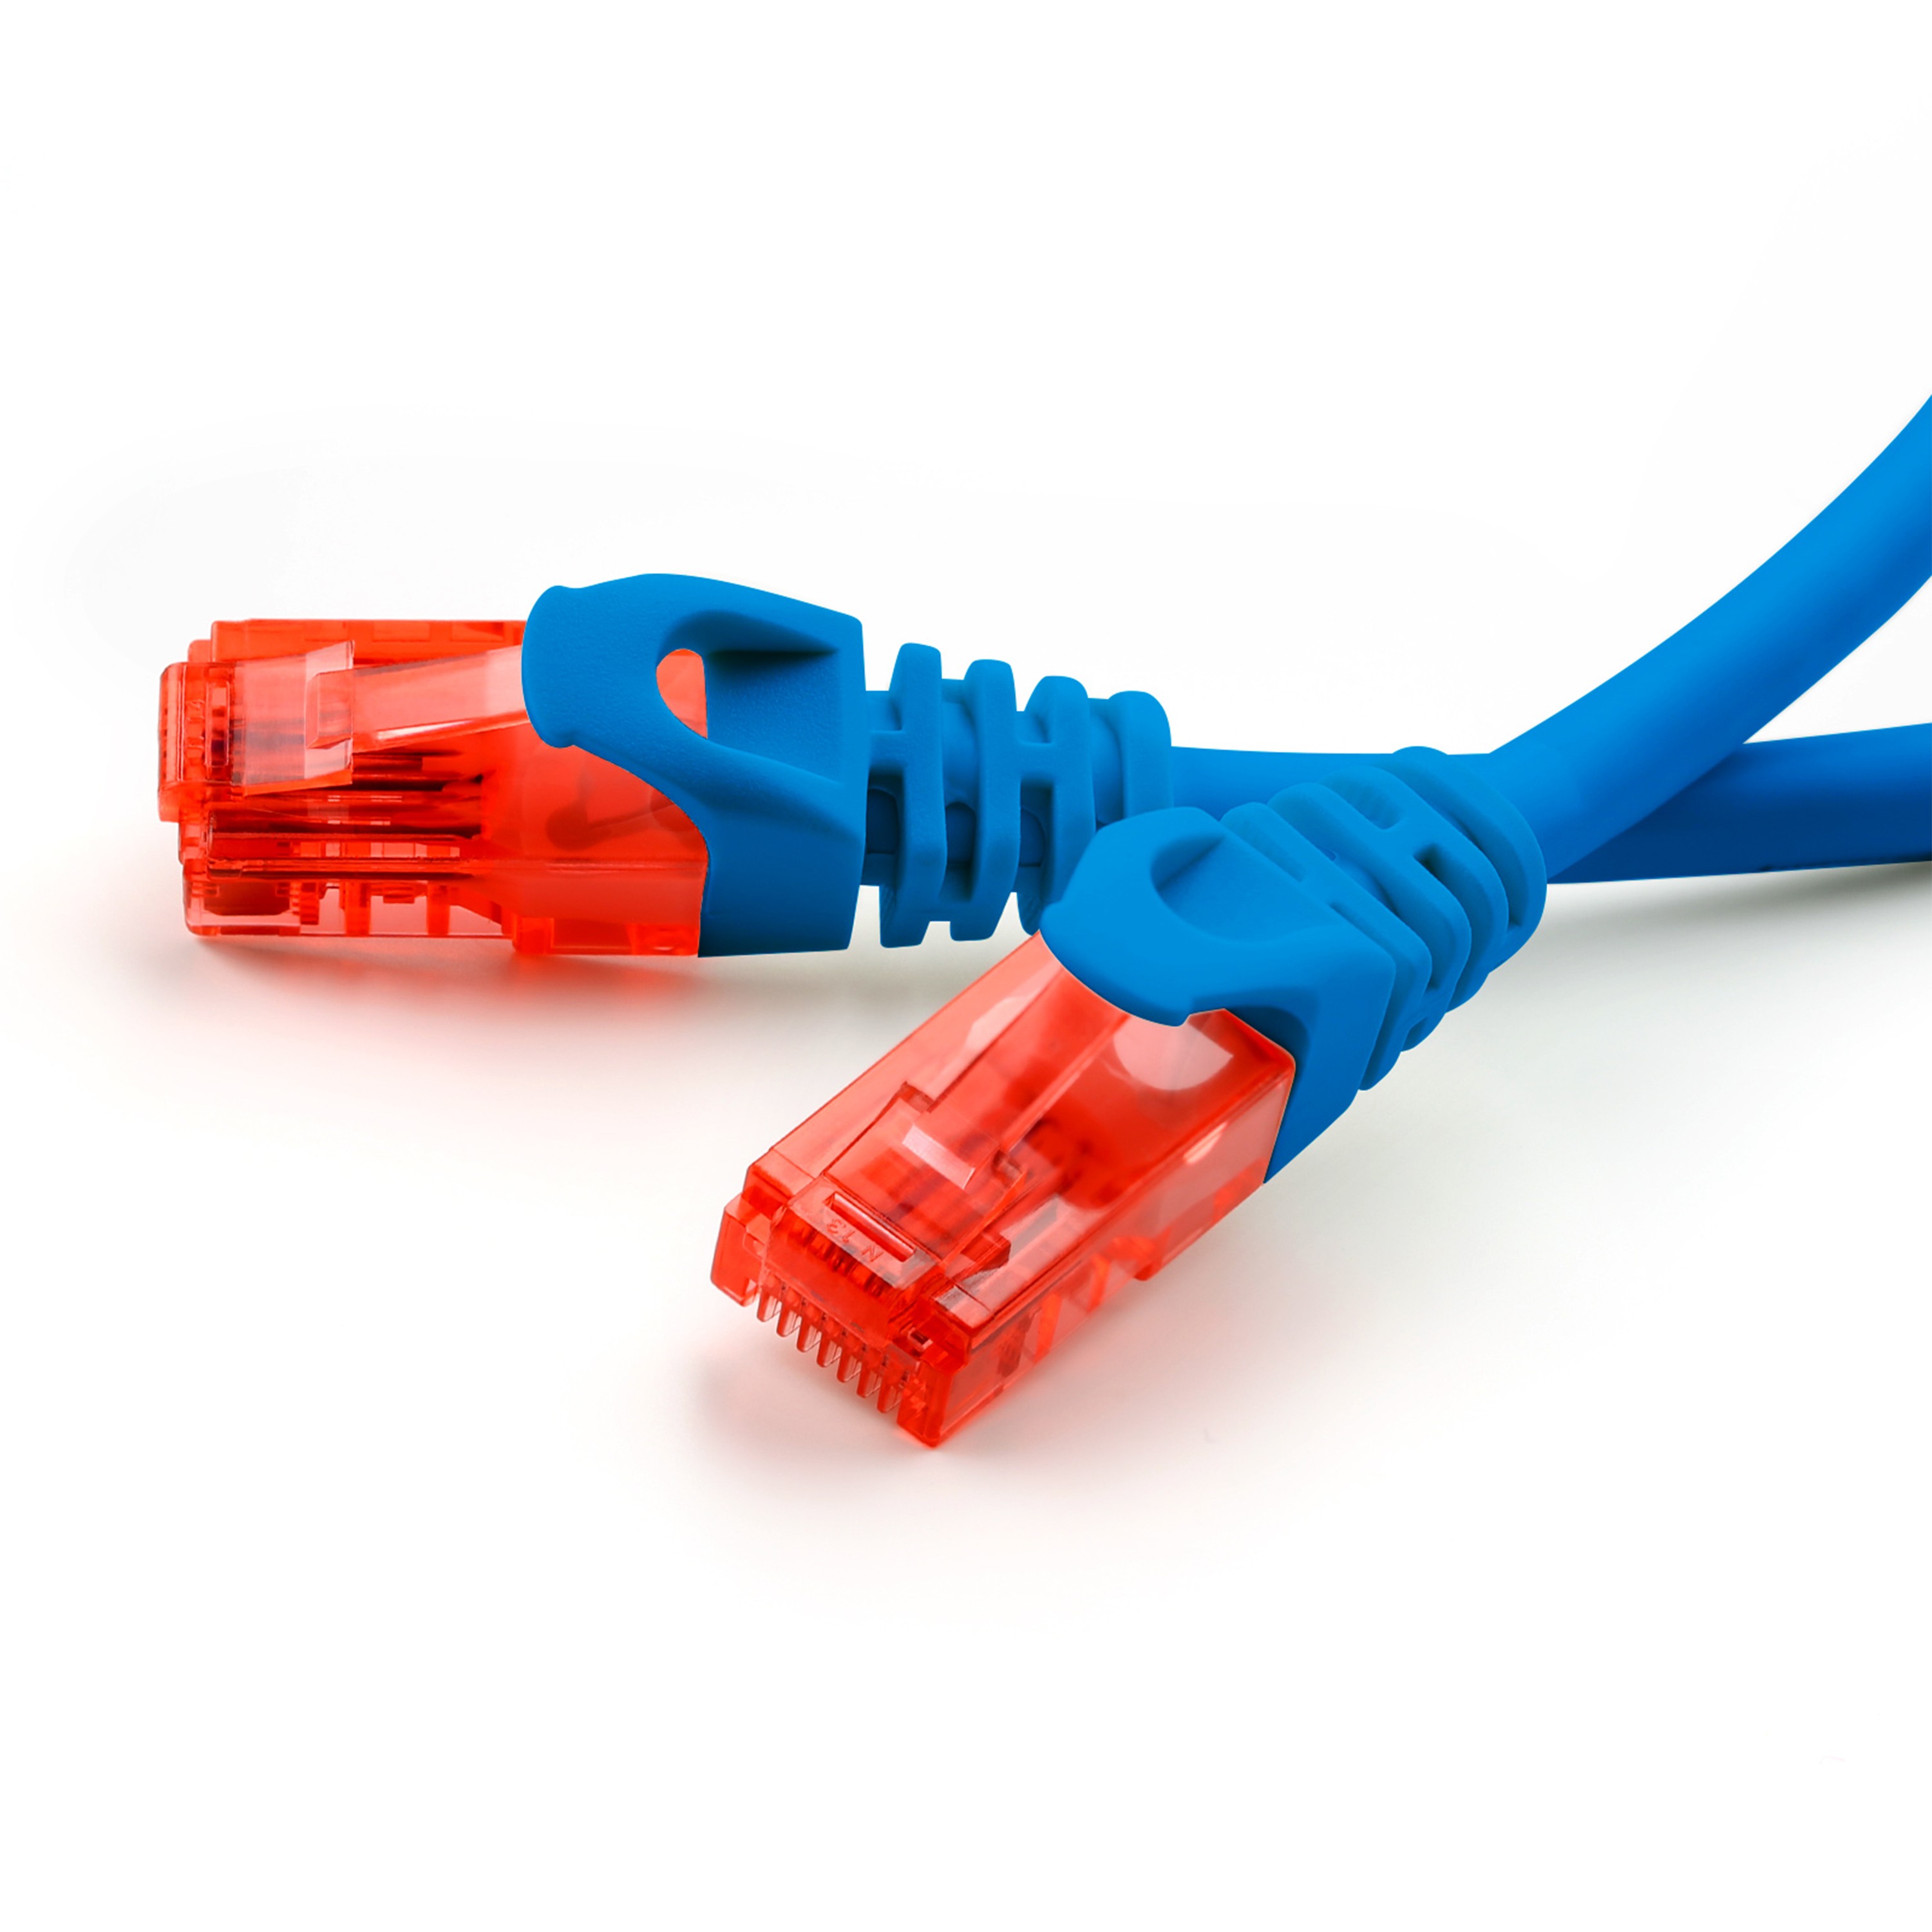 Câbles réseau Vshop ® câble réseau plat CAT6 - RJ45 - Ethernet 20M - Blanc